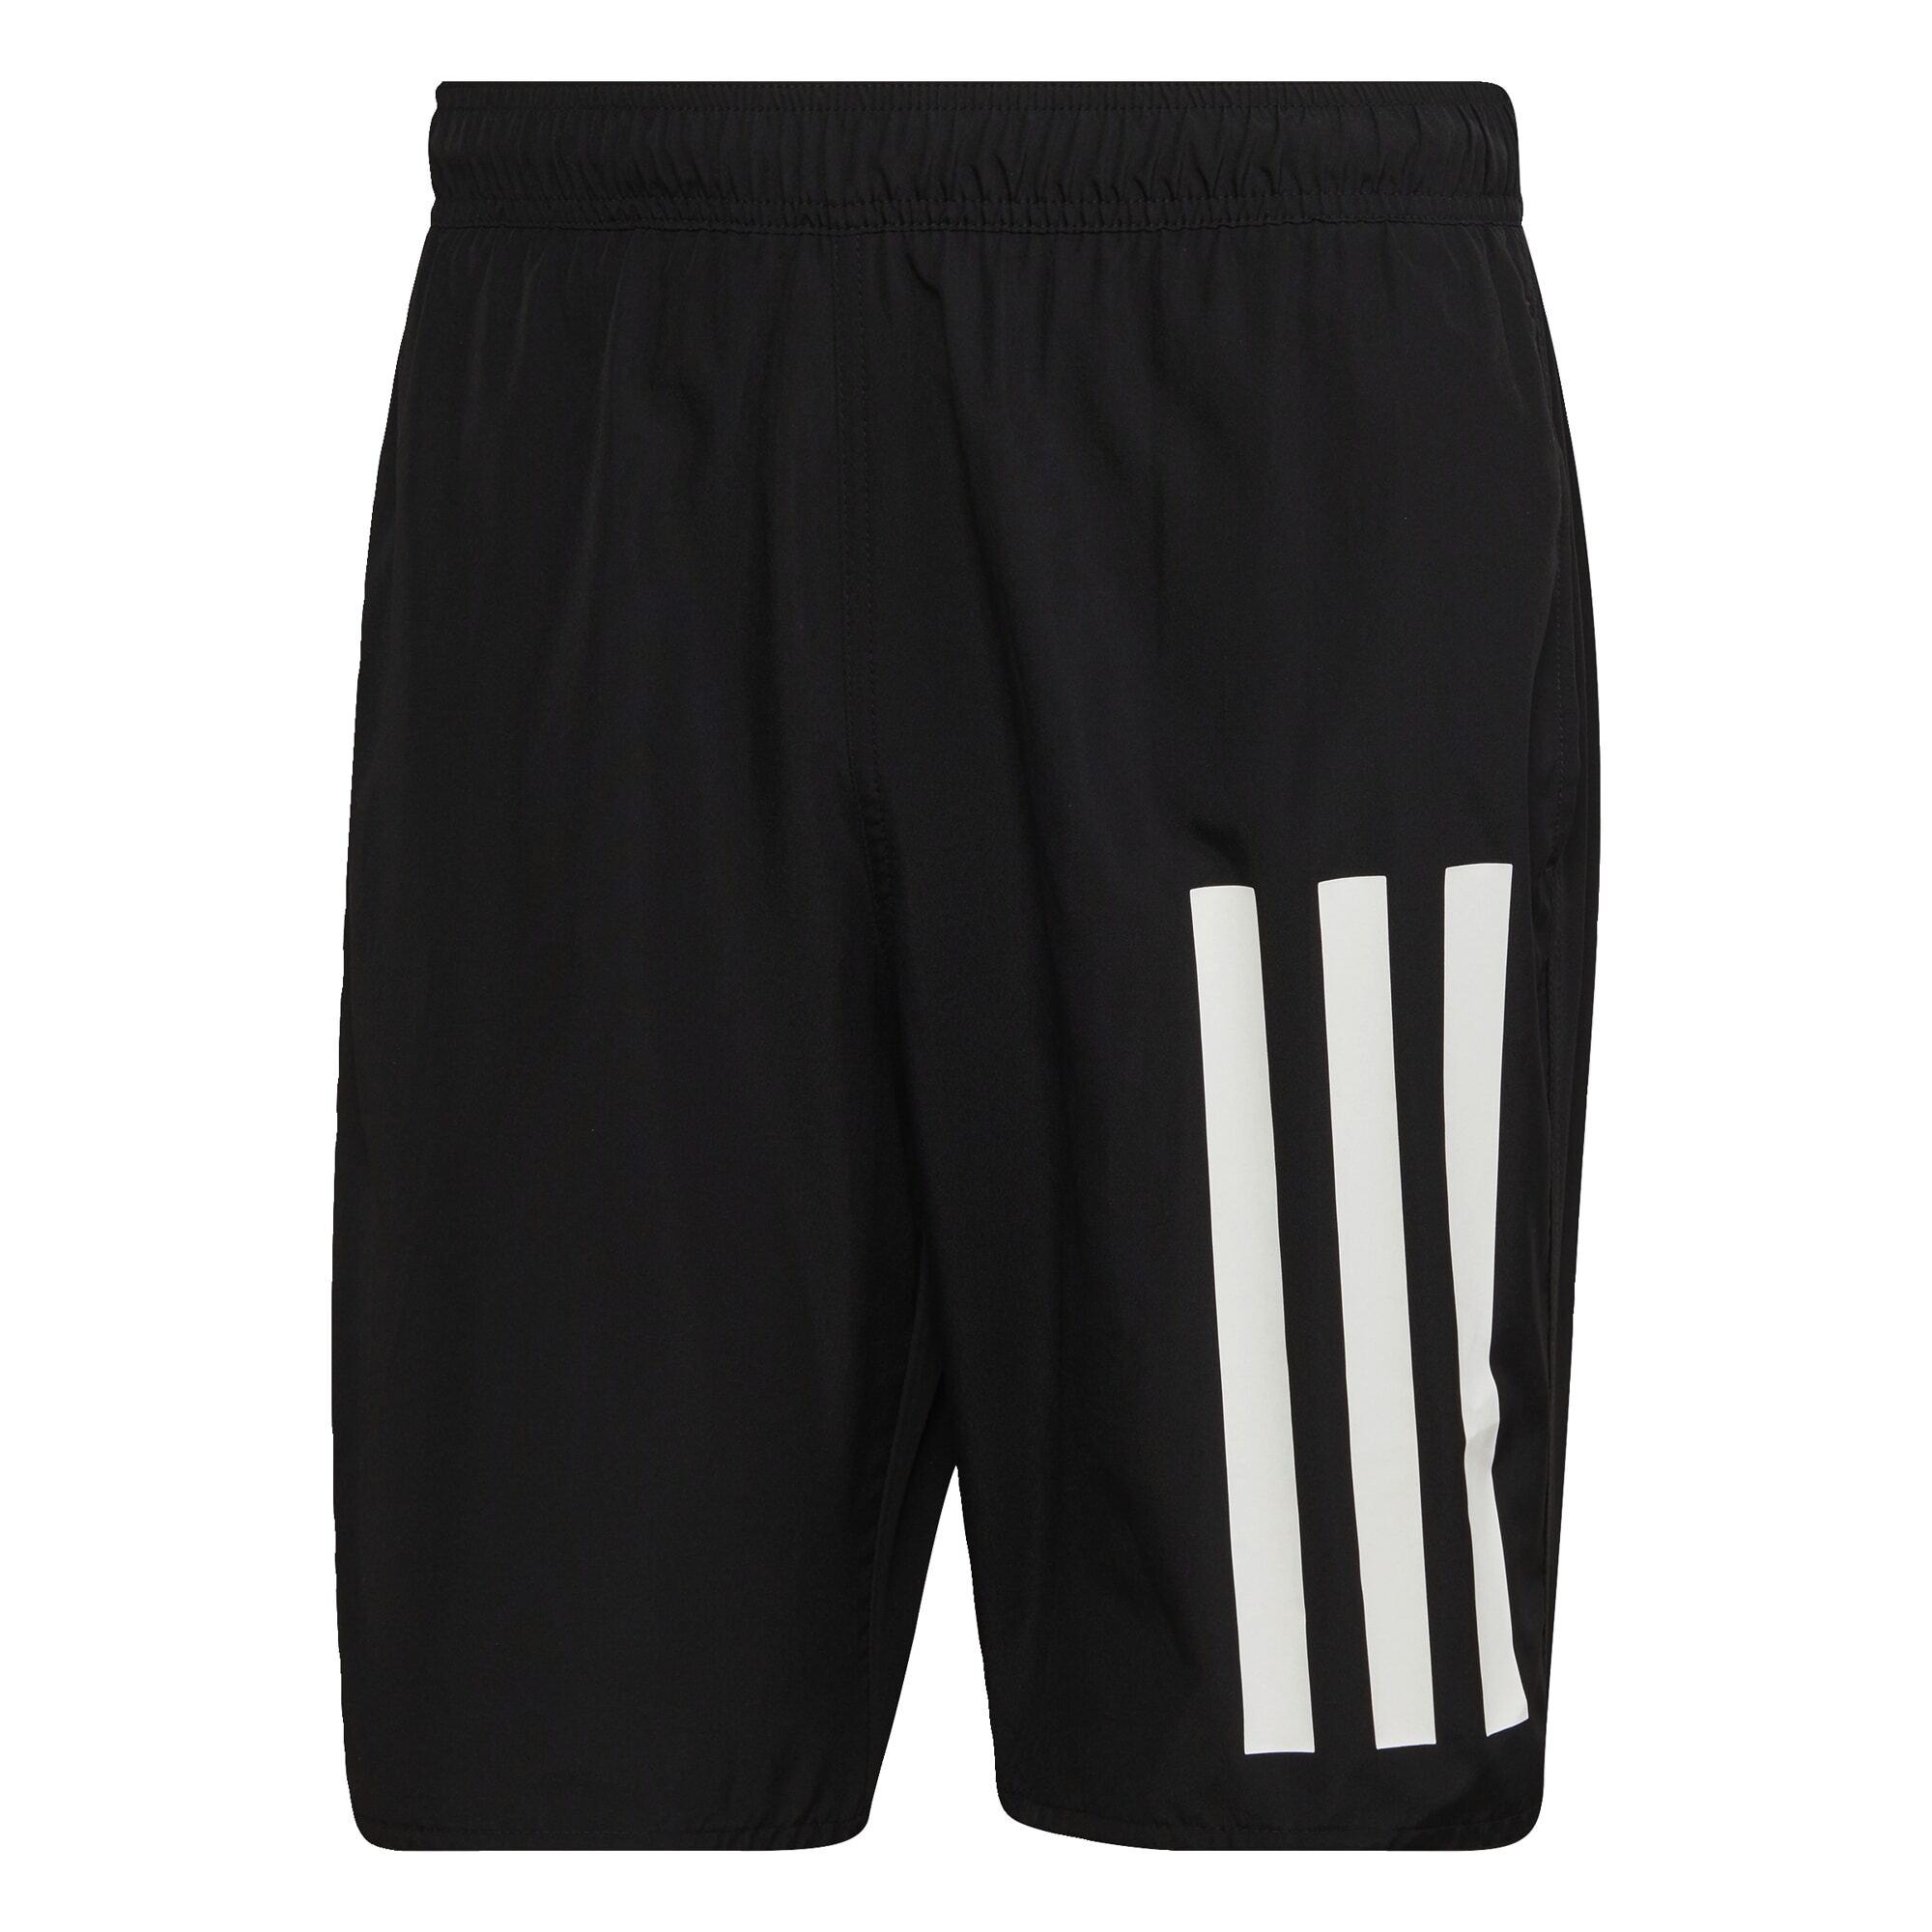 Adidas Classic Length 3-Streifen Badeshorts Badehose Herren Black / White  im Online Shop von SportScheck kaufen | 